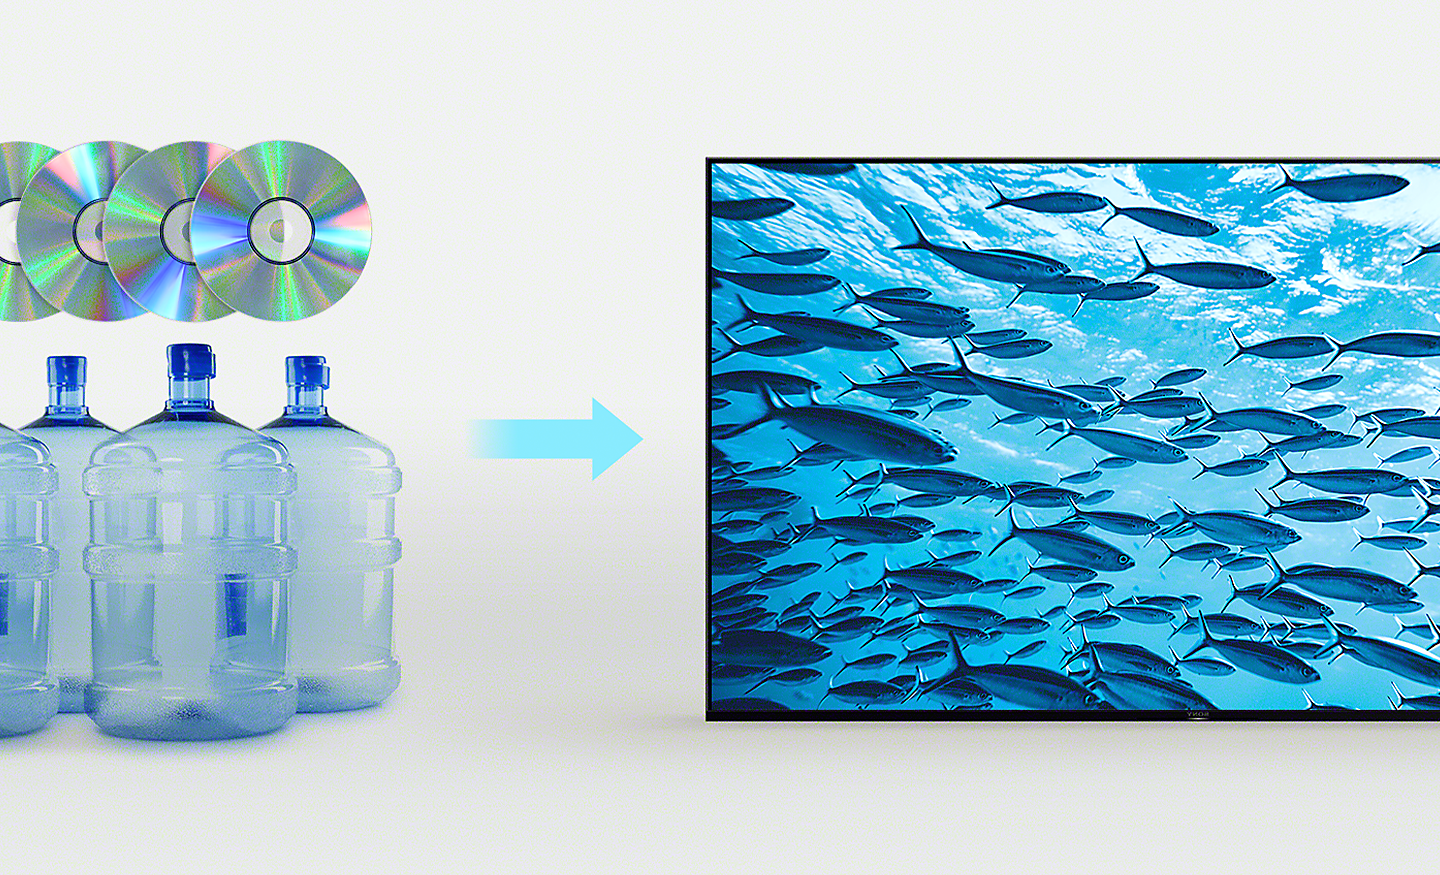 Obrázok štyroch plastových fliaš a štyroch kompaktných diskov v ľavej časti obrázka a šípka ukazujúca na TV BRAVIA s rybami plávajúcimi v oceáne na obrazovke v pravej časti obrázka